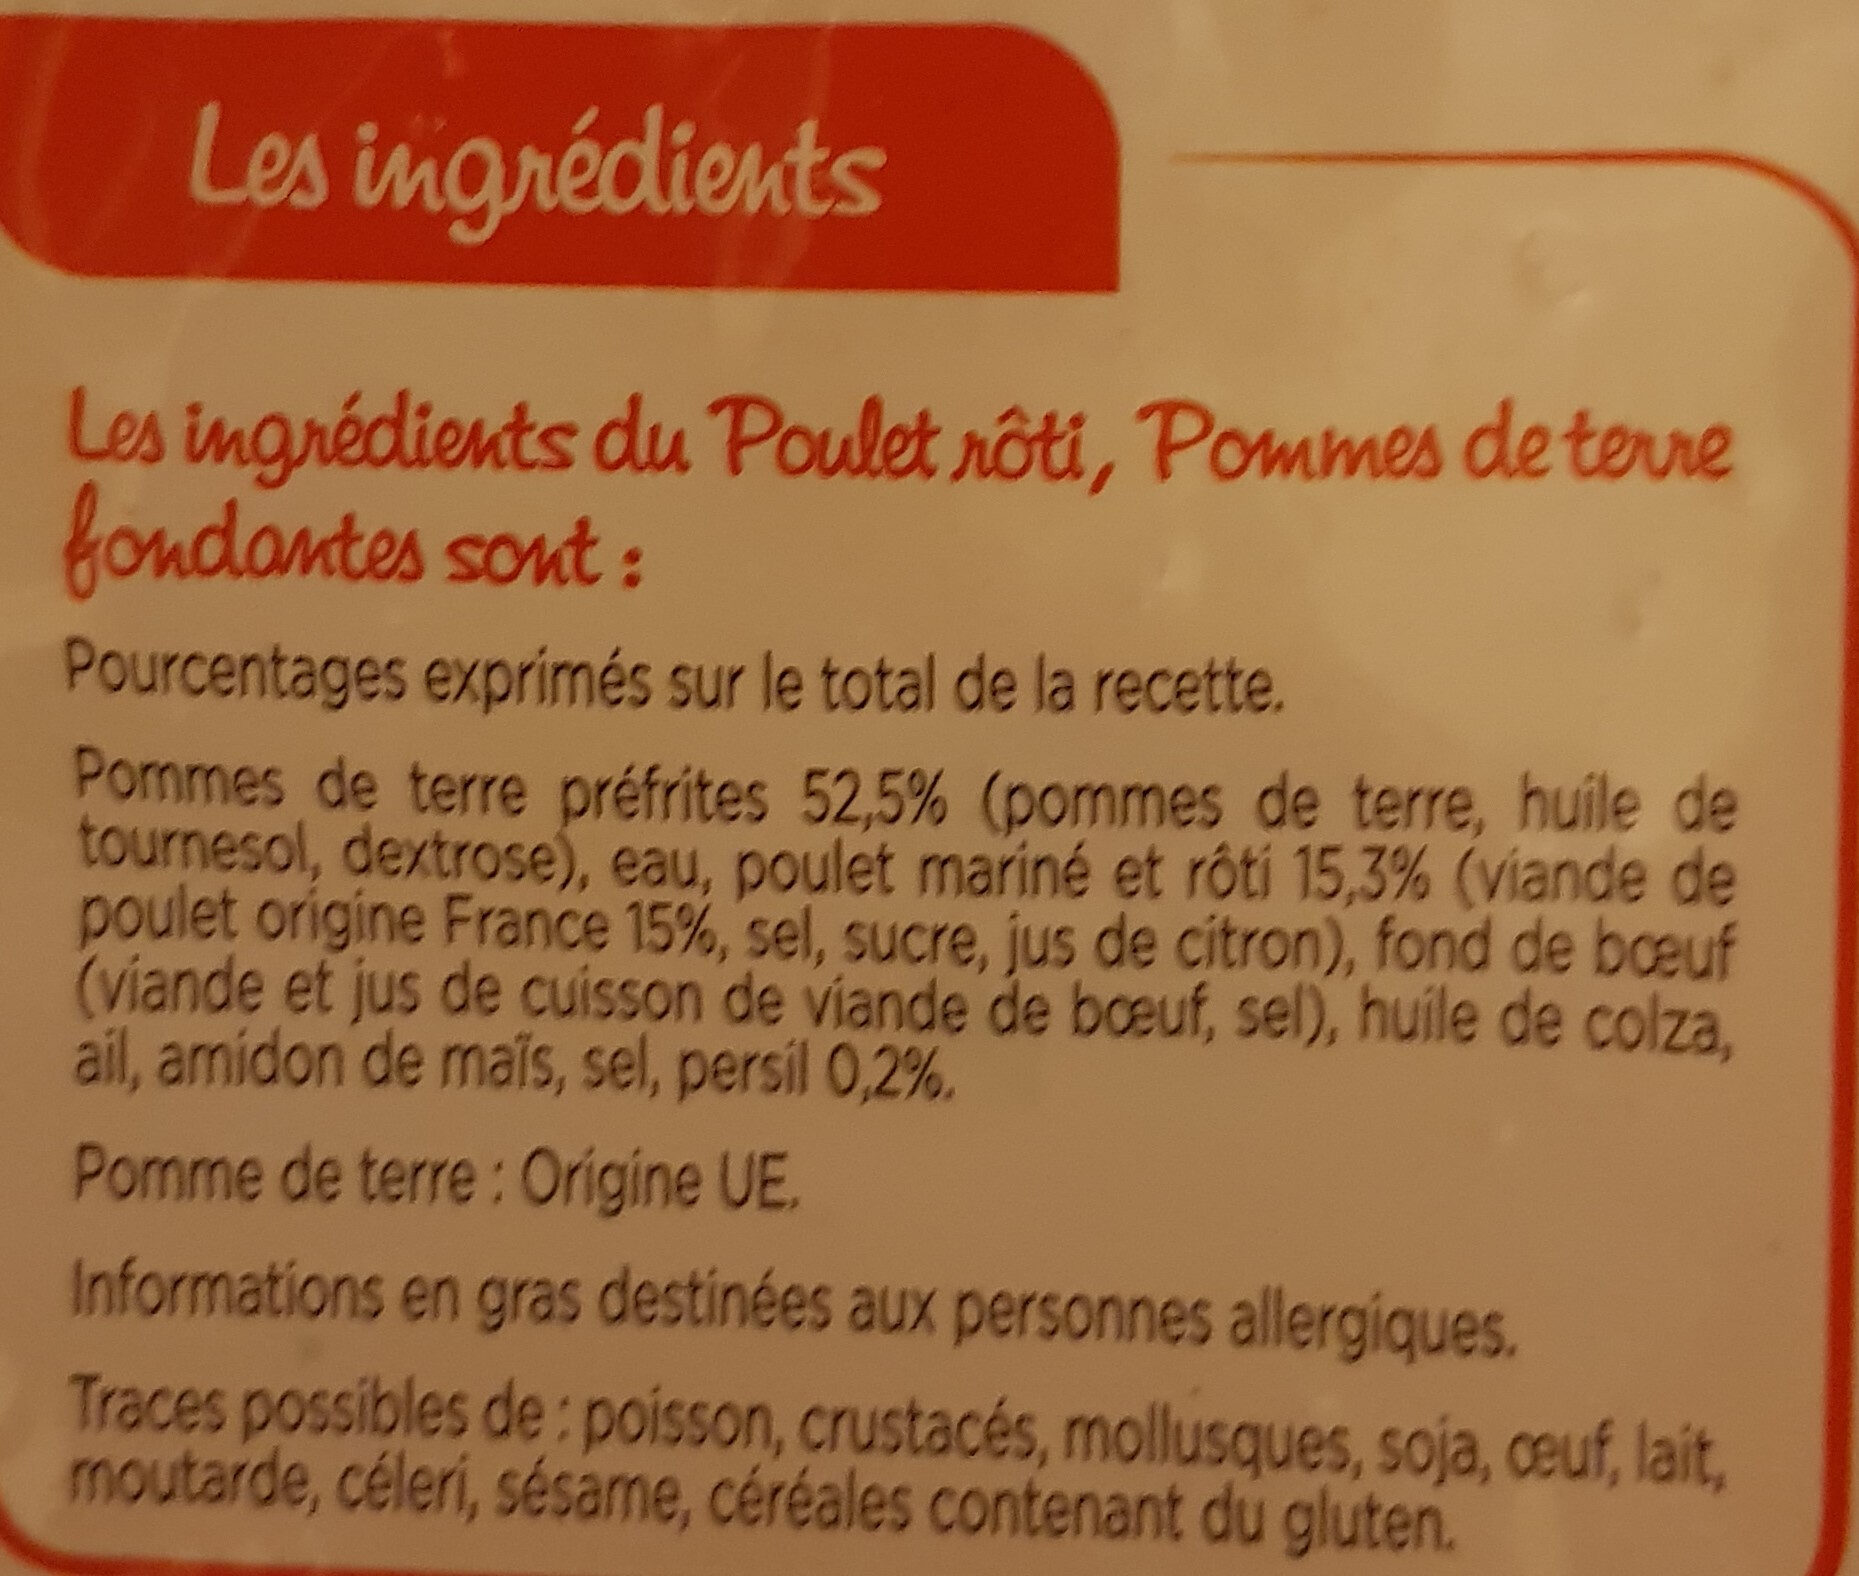 Poulet Rôti et Pommes de terre Fondantes - Ingredienti - fr